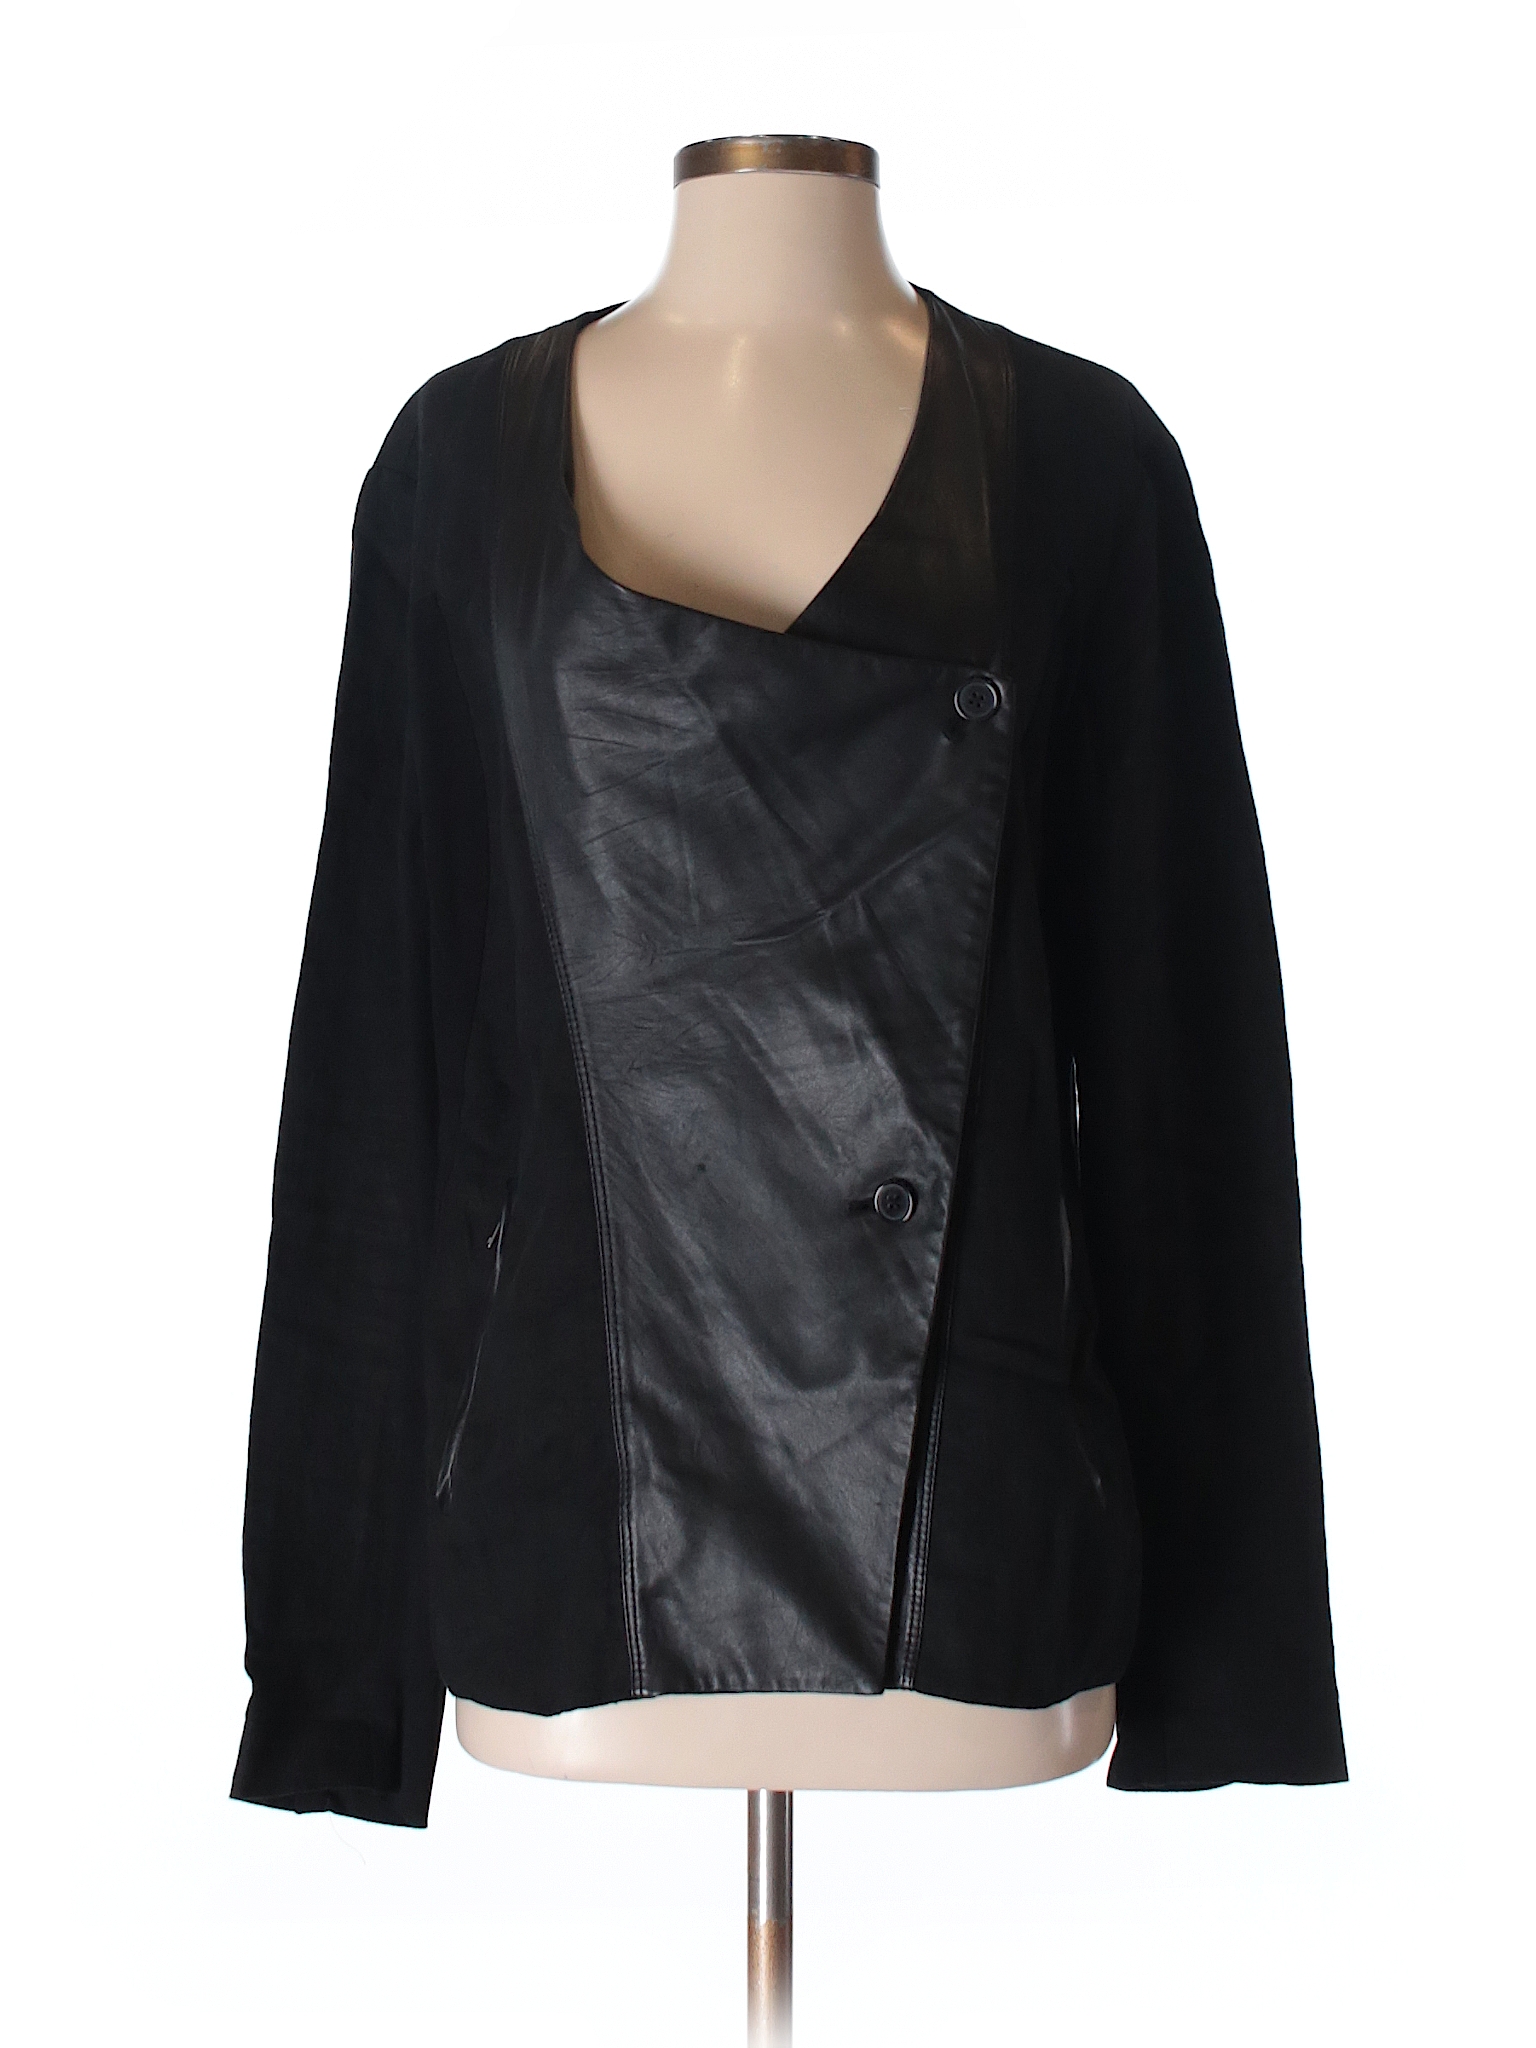 PureDKNY 100% Linen Solid Black Jacket Size L - 89% off | thredUP